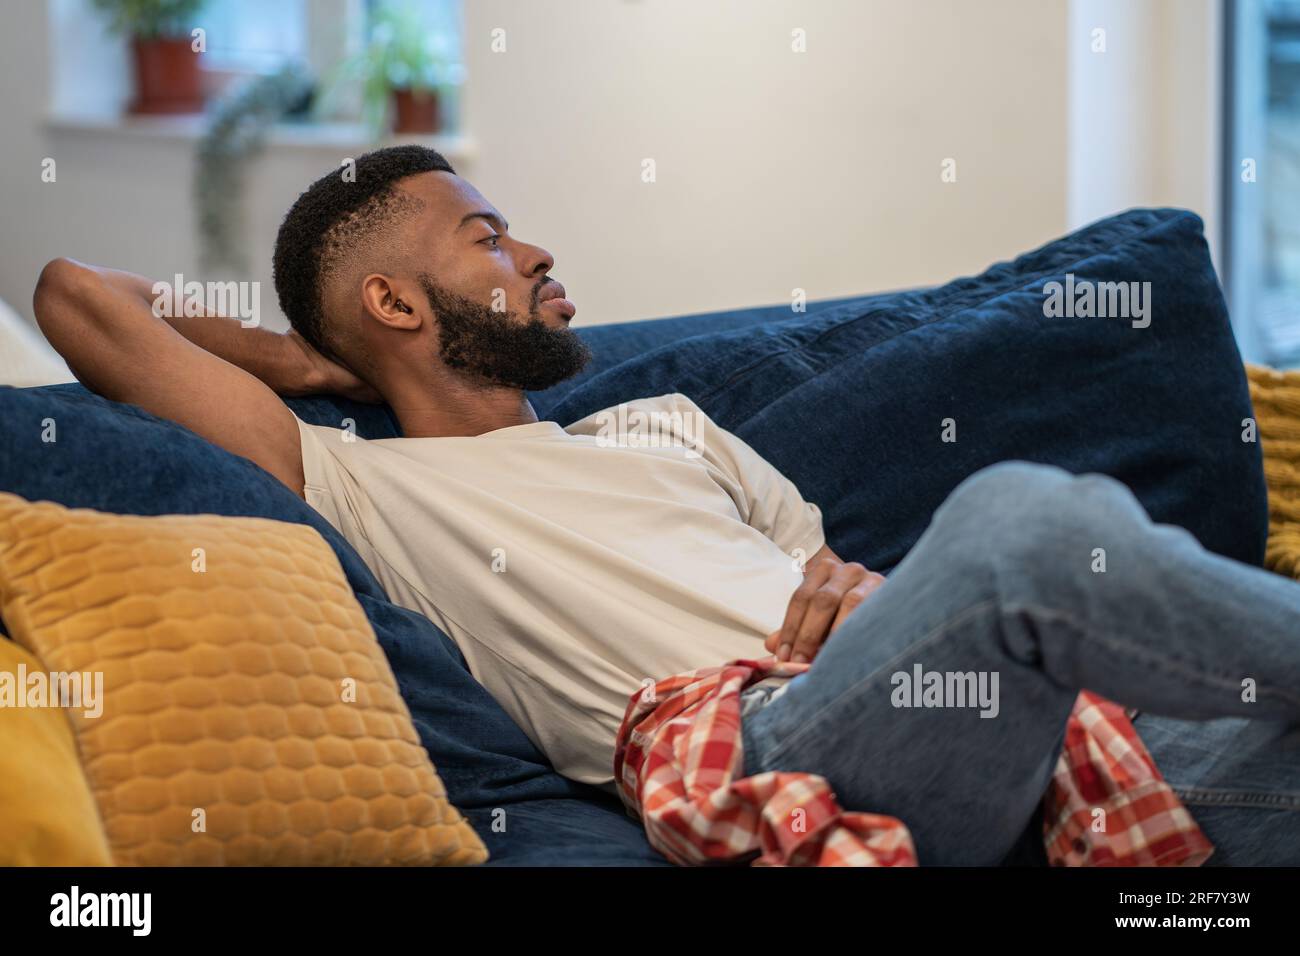 Il ragazzo afro-americano sognante e premuroso siede su divani appoggiati nel monolocale. Foto Stock